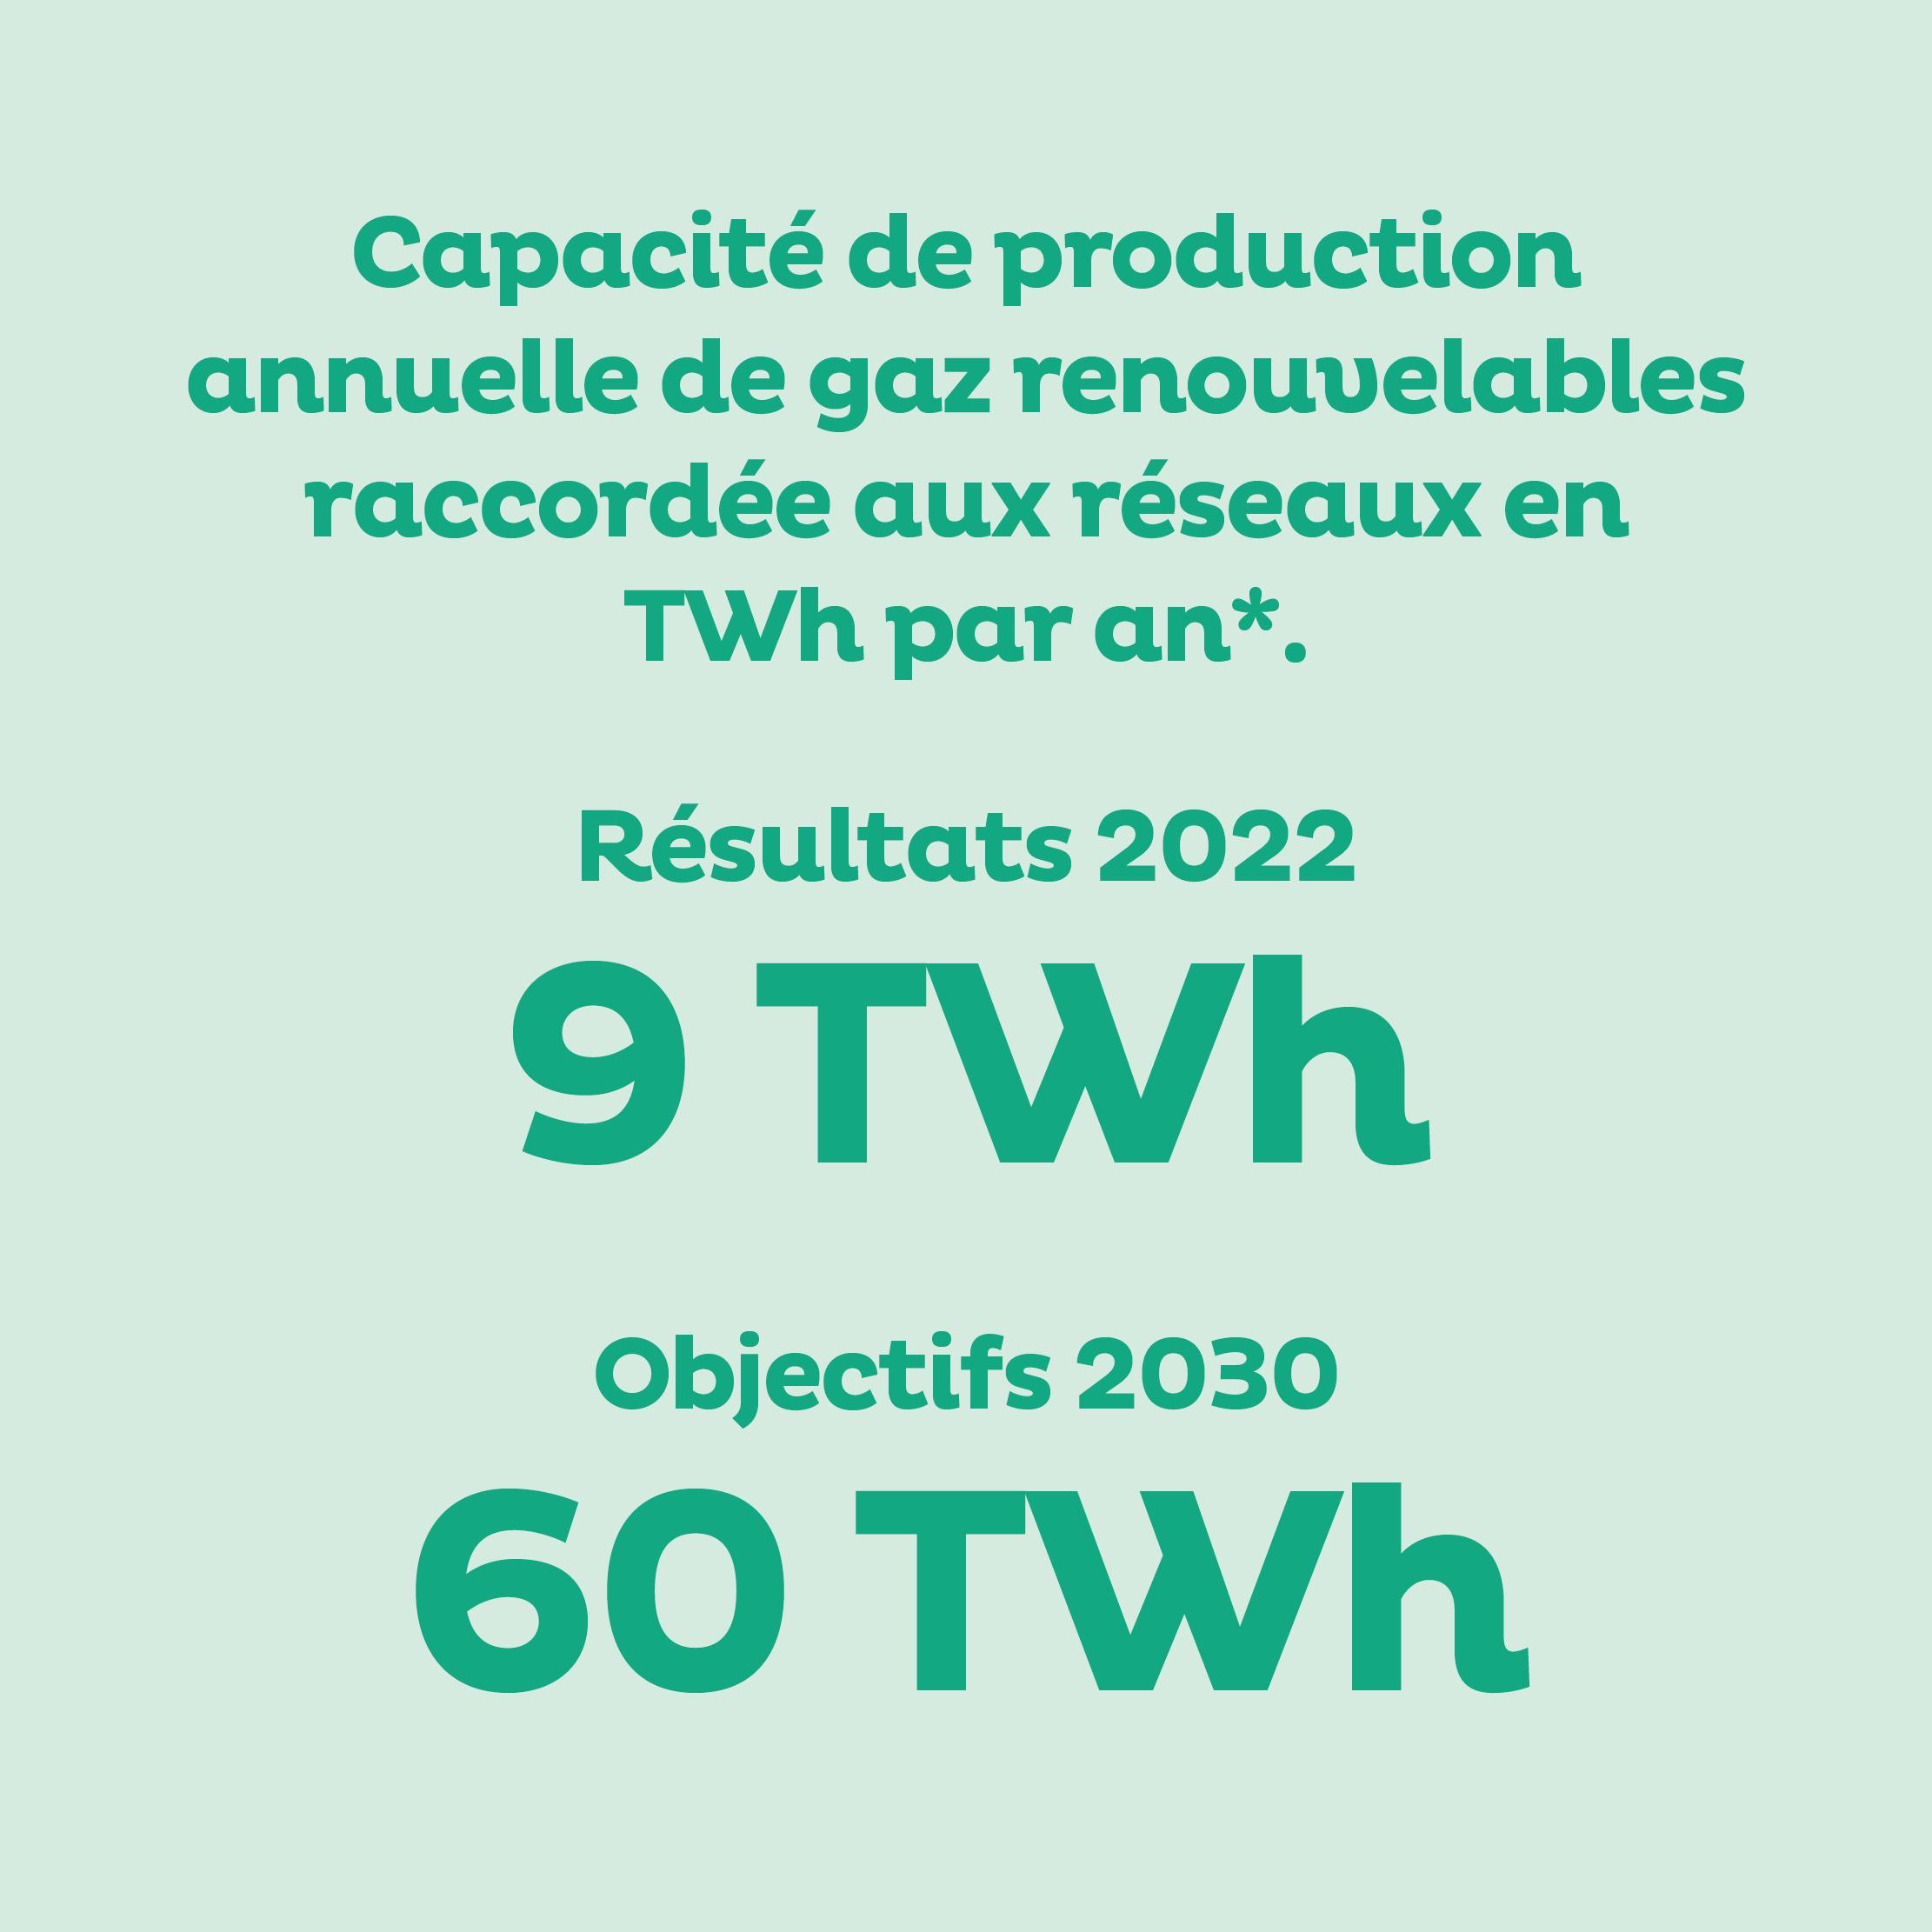 Capacité de production annuelle de gaz renouvelables raccordée aux réseaux en TWh par an*  Résultat 2022 : 9 TWh  Objectifs 2030 : 60 TWh